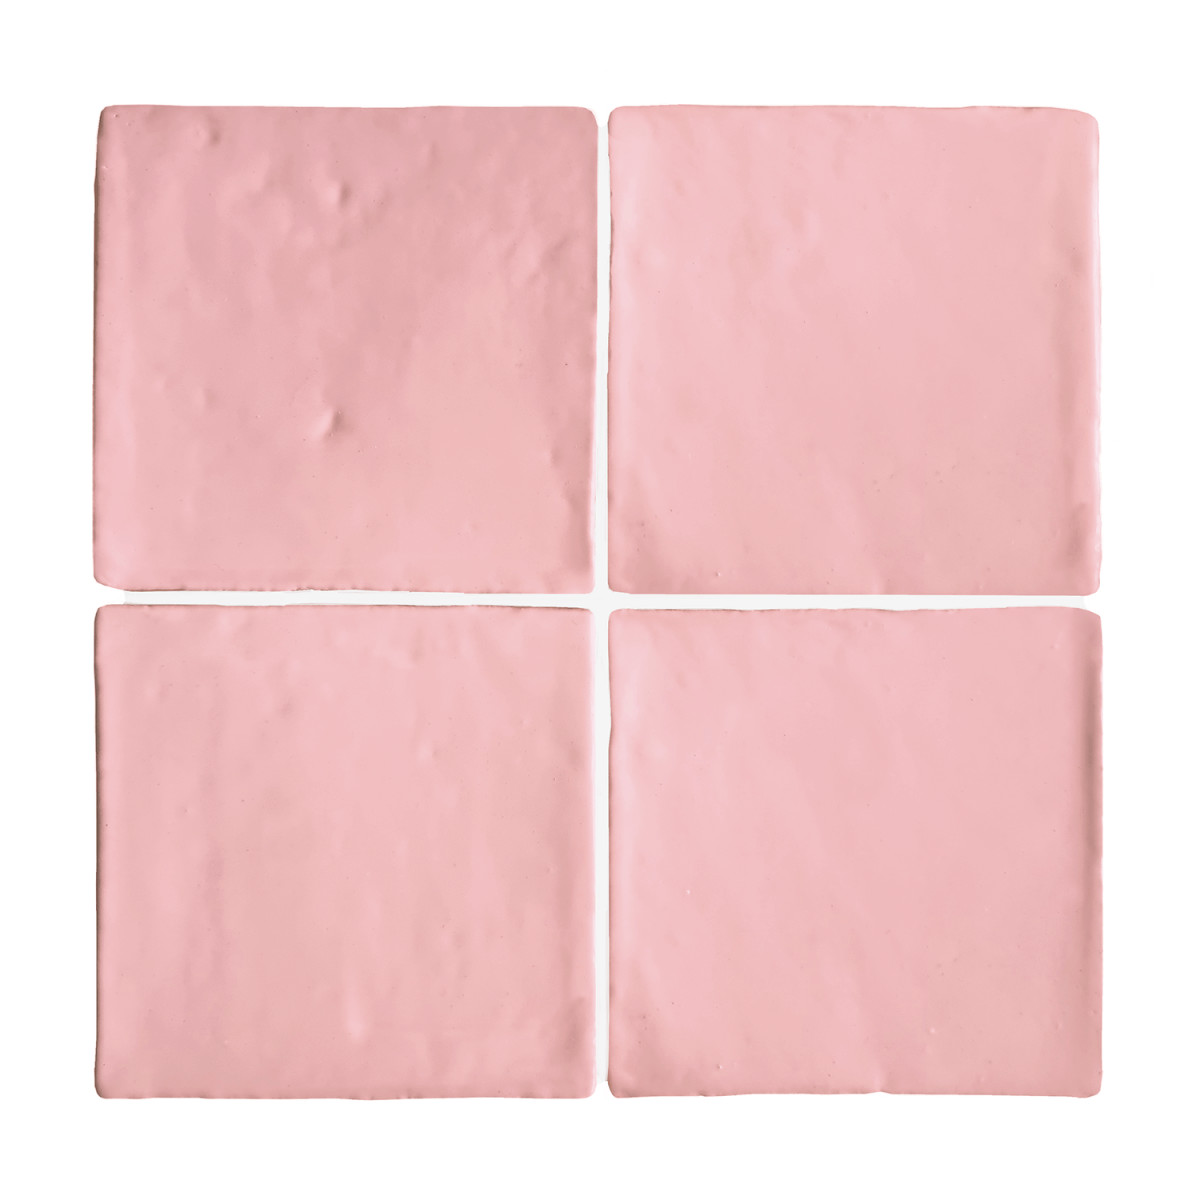 Glasierte Terracotta Wandfliesen - Farbe Pink, Referenz G081 - Format 10x10 cm